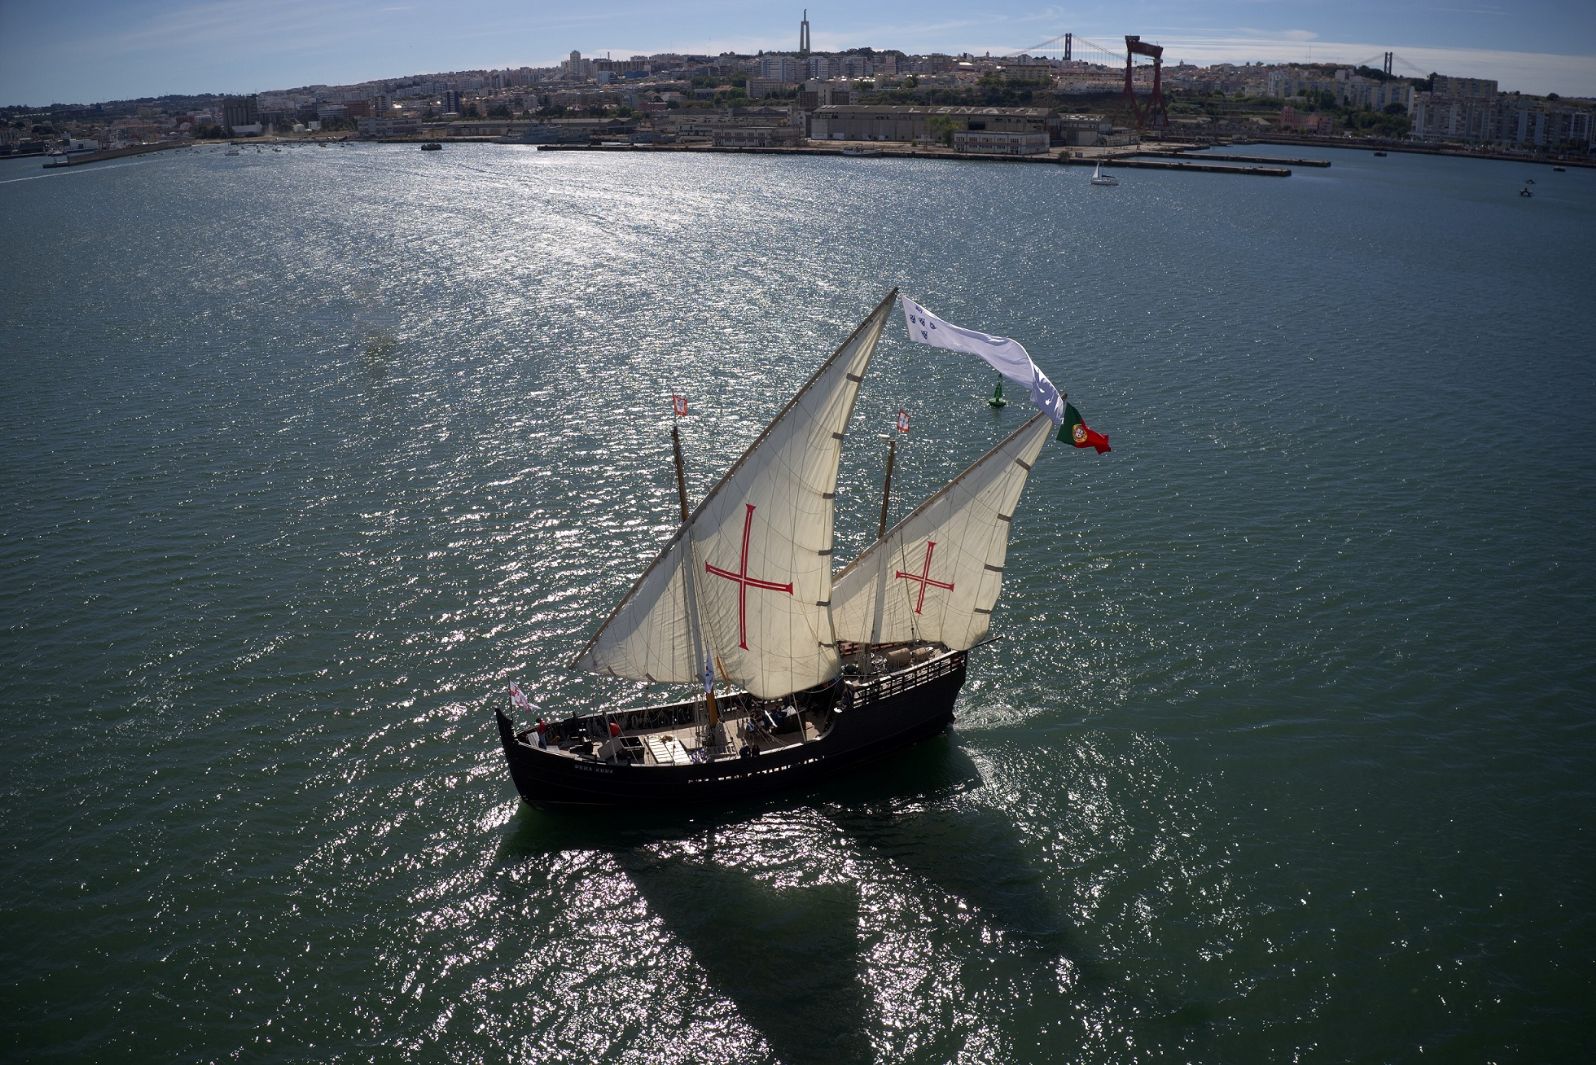 Caminho Marítimo de Santiago: Redescobrir a história e a paisagem costeira a bordo de um barco à vela